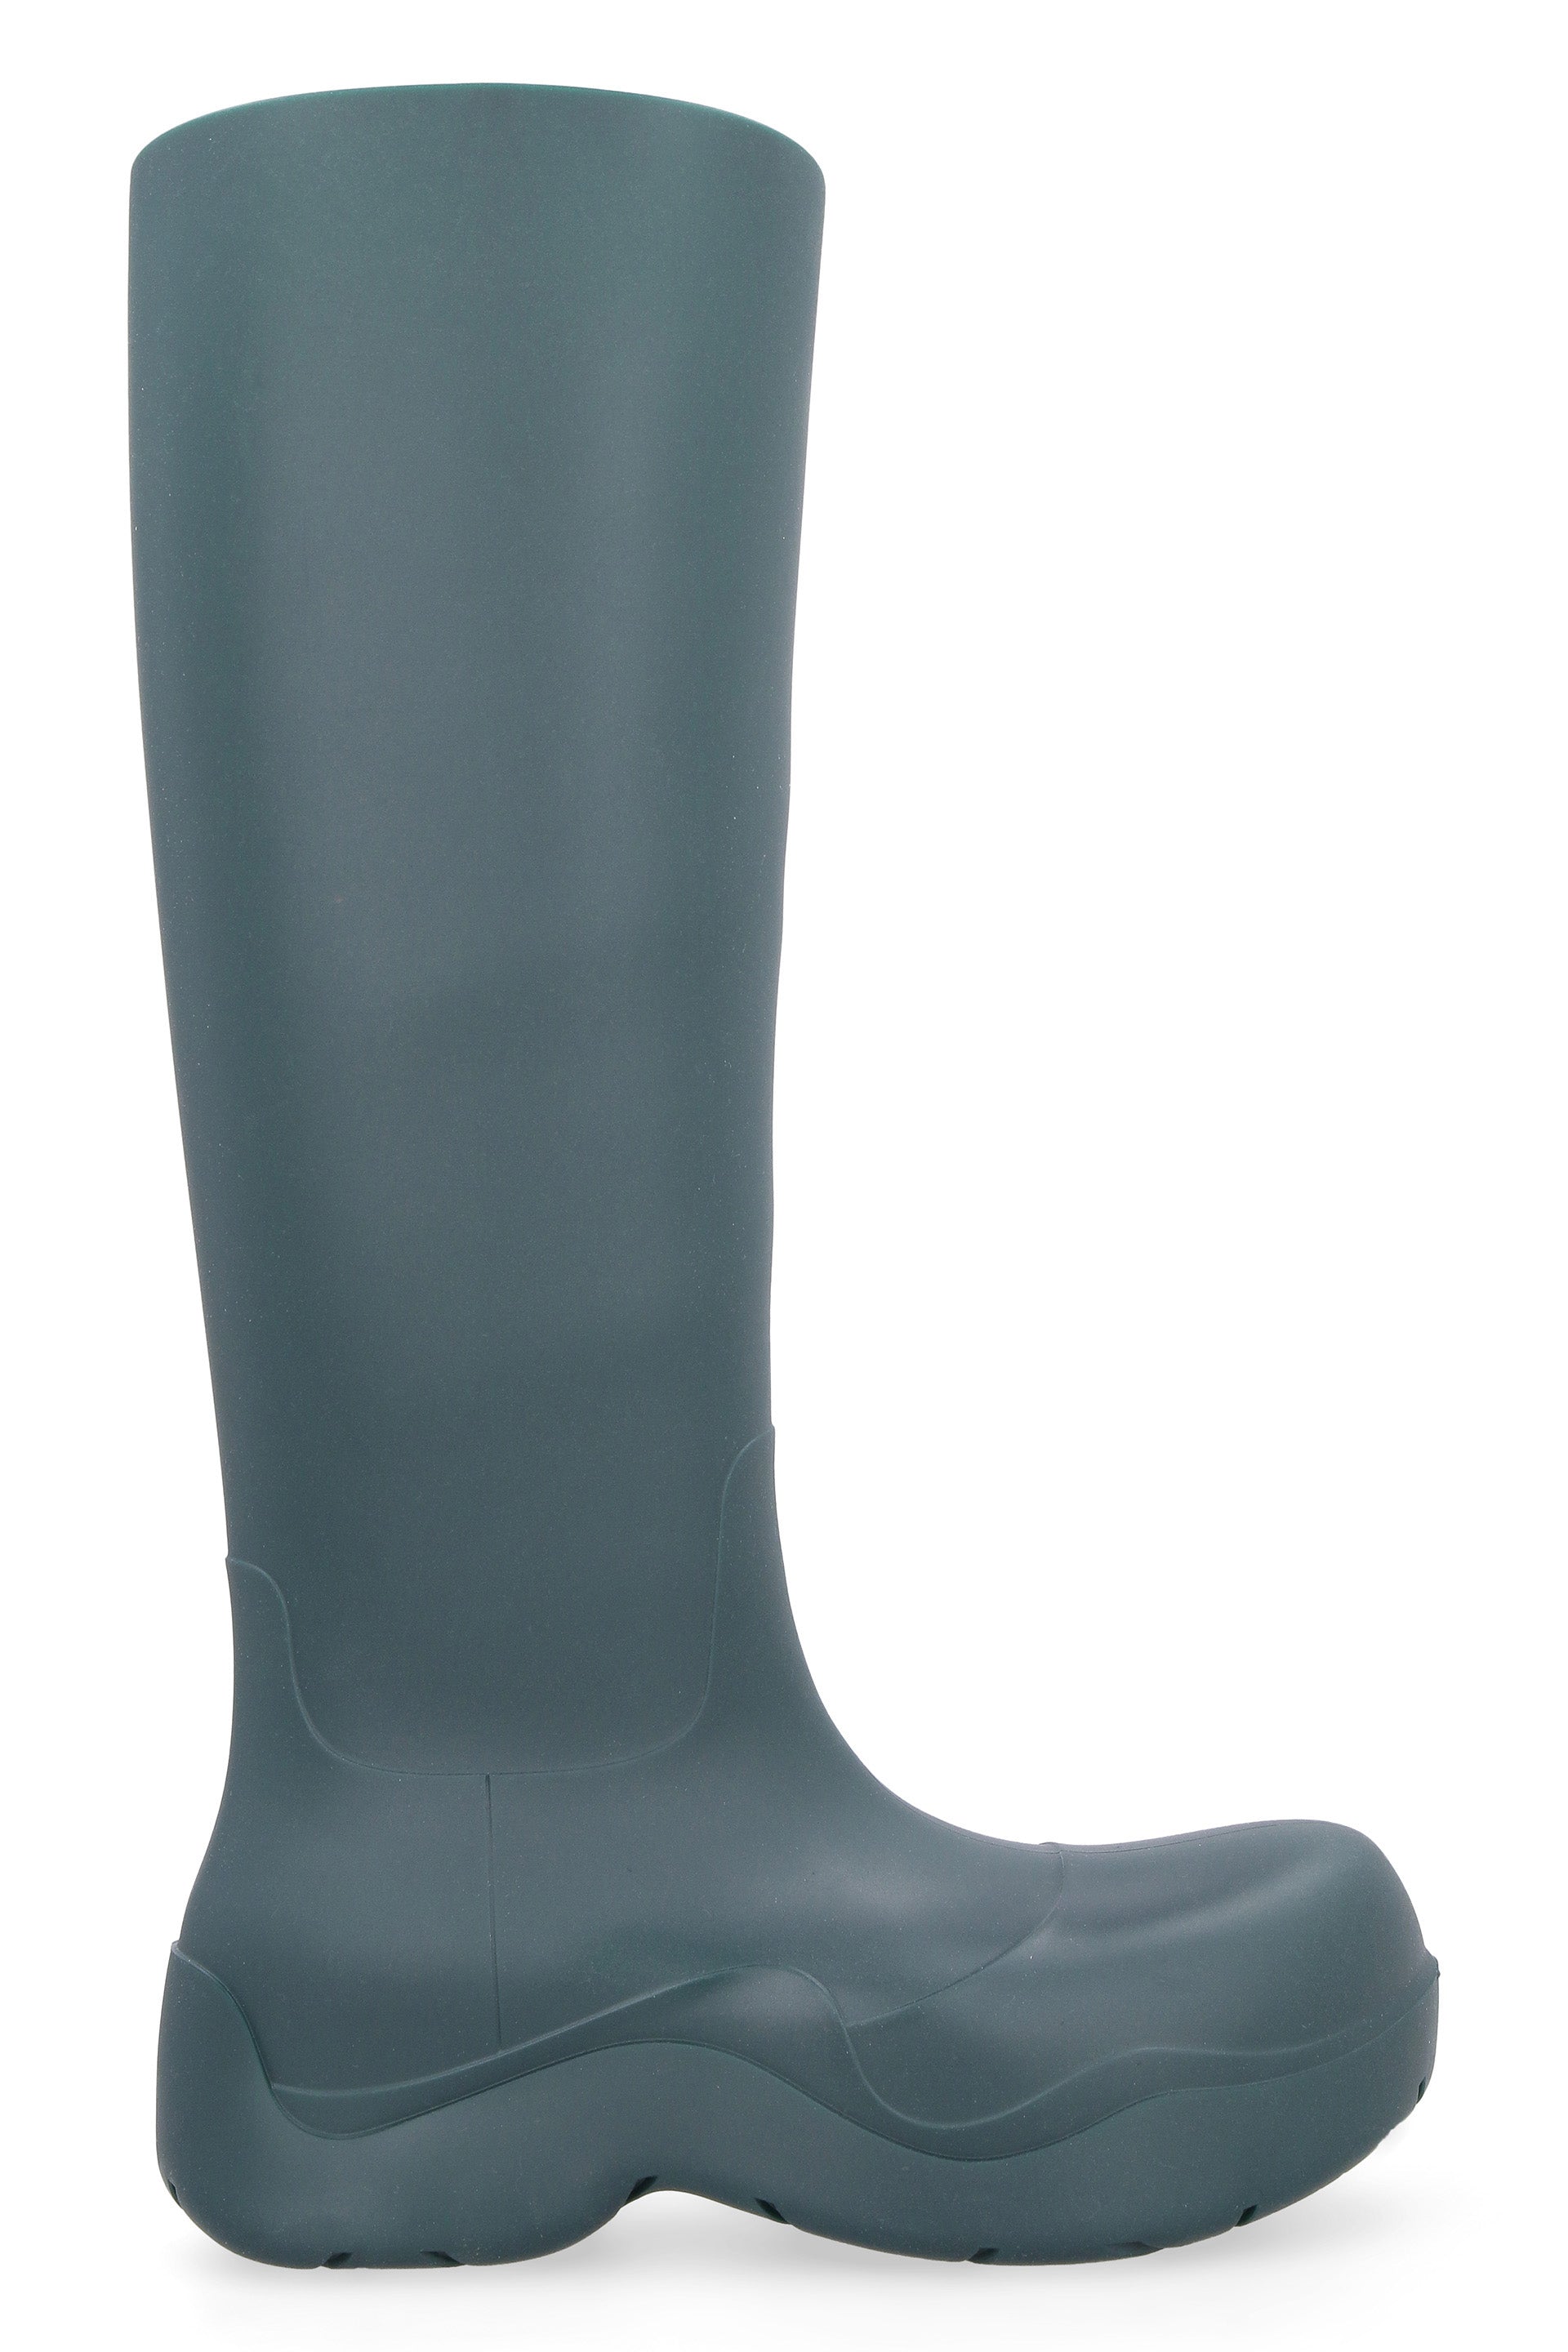 Puddle rubber boots-Bottega Veneta-OUTLET-SALE-36-ARCHIVIST